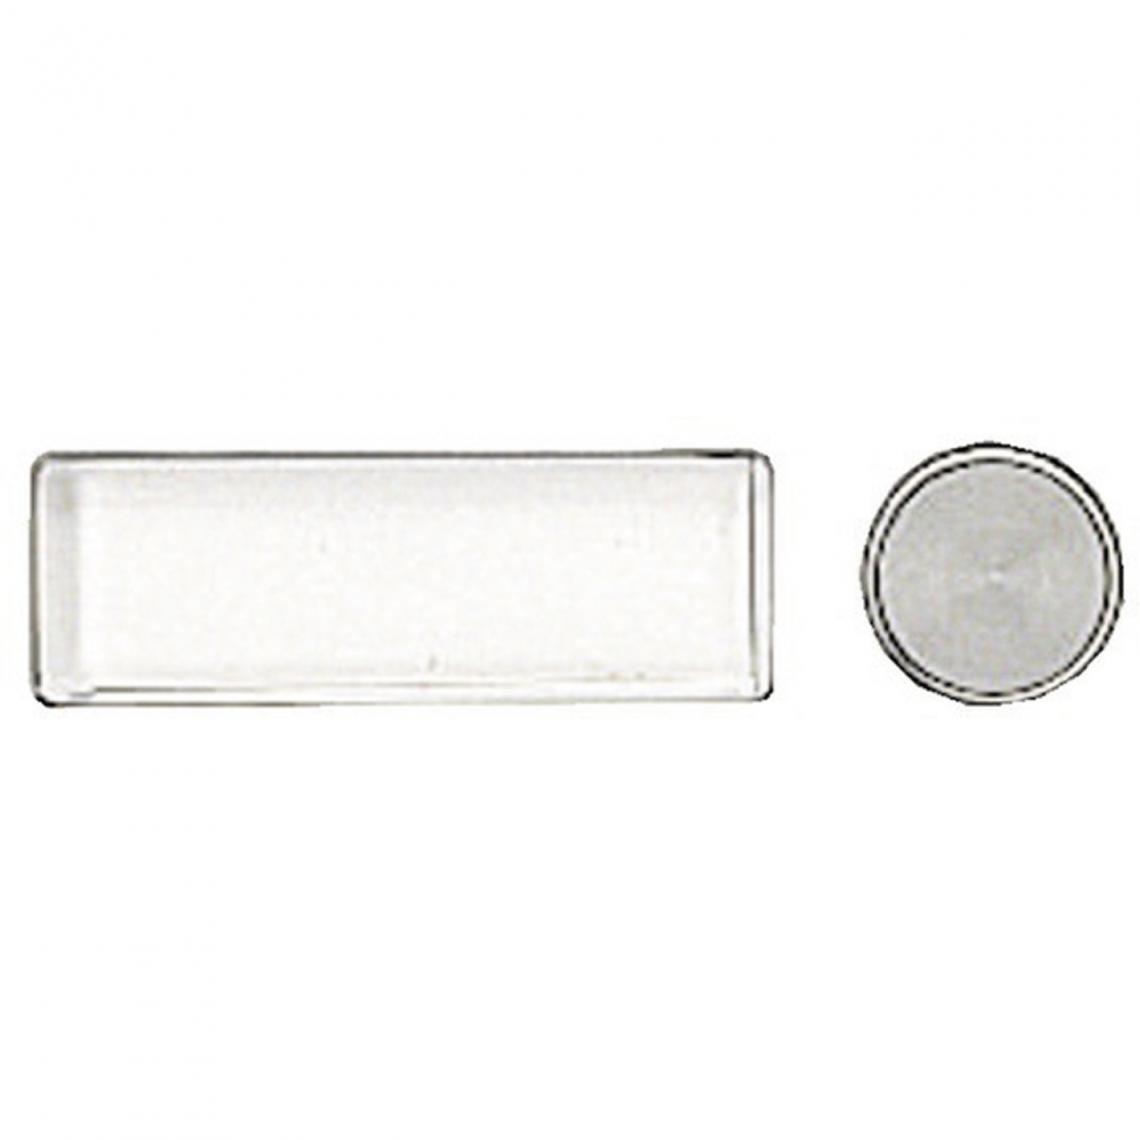 Bticino - bouton poussoir + étiquette - serie 100 - bticino 308910 - Accessoires de motorisation